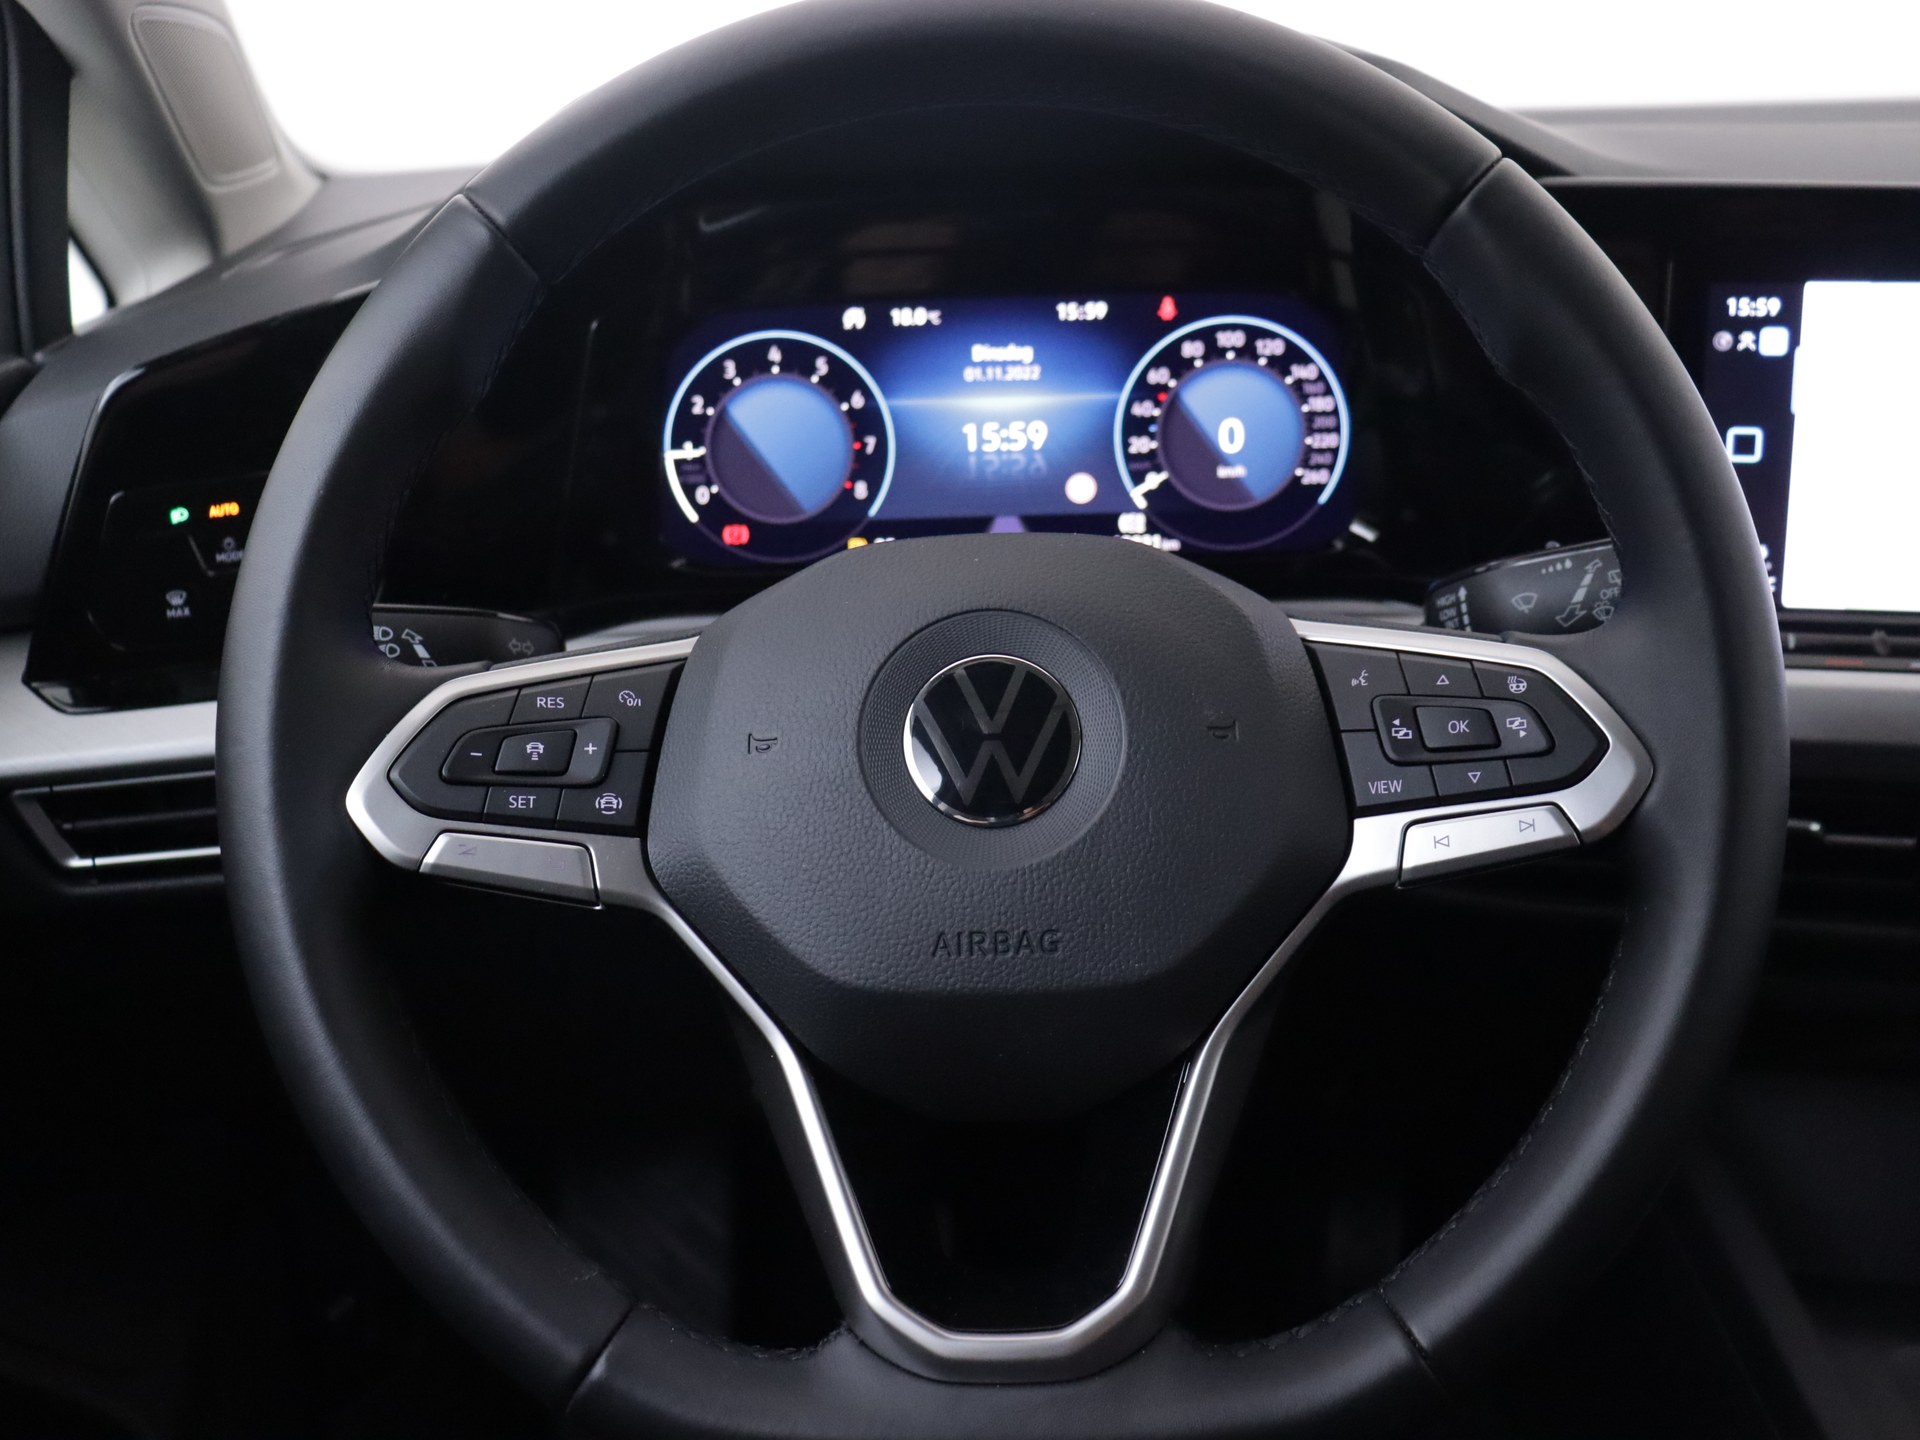 Volkswagen Golf Variant 1.0 TSI Life Bns van CarSelexy dealer Wijnand's Auto Service  in Bunschoten